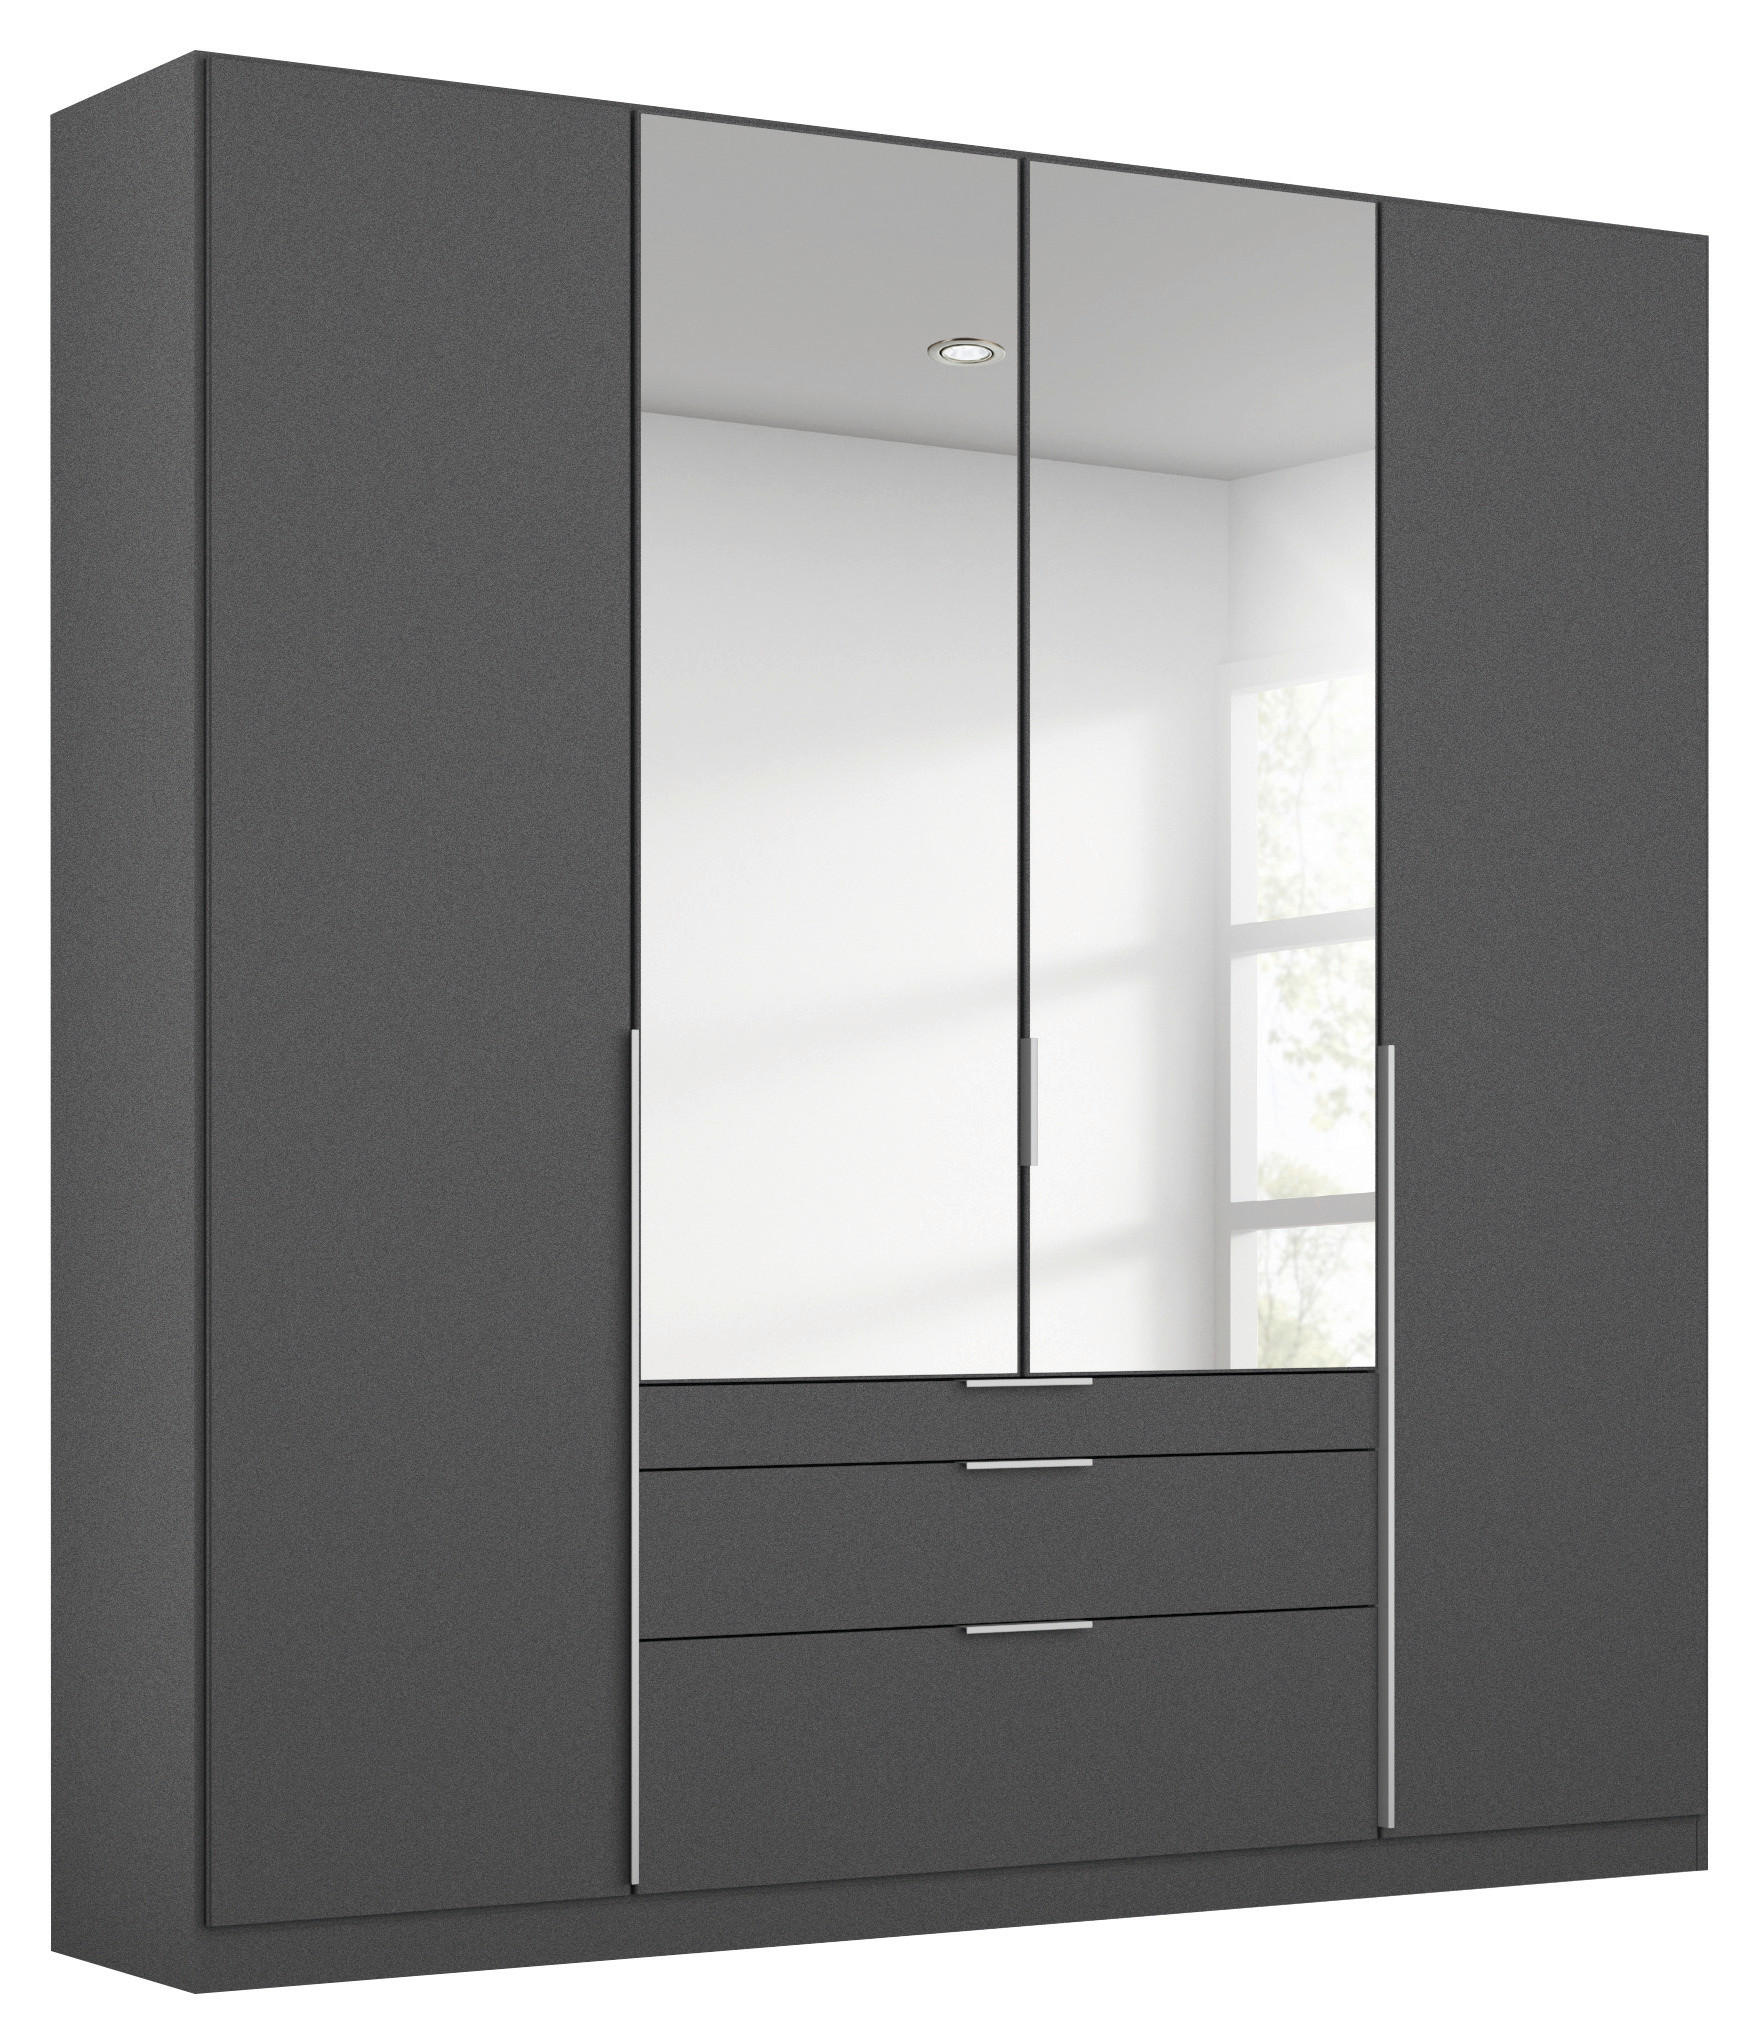 GARDEROB grå  - alufärgad/grå, Modern, träbaserade material (181/229/54cm) - Rauch Möbel